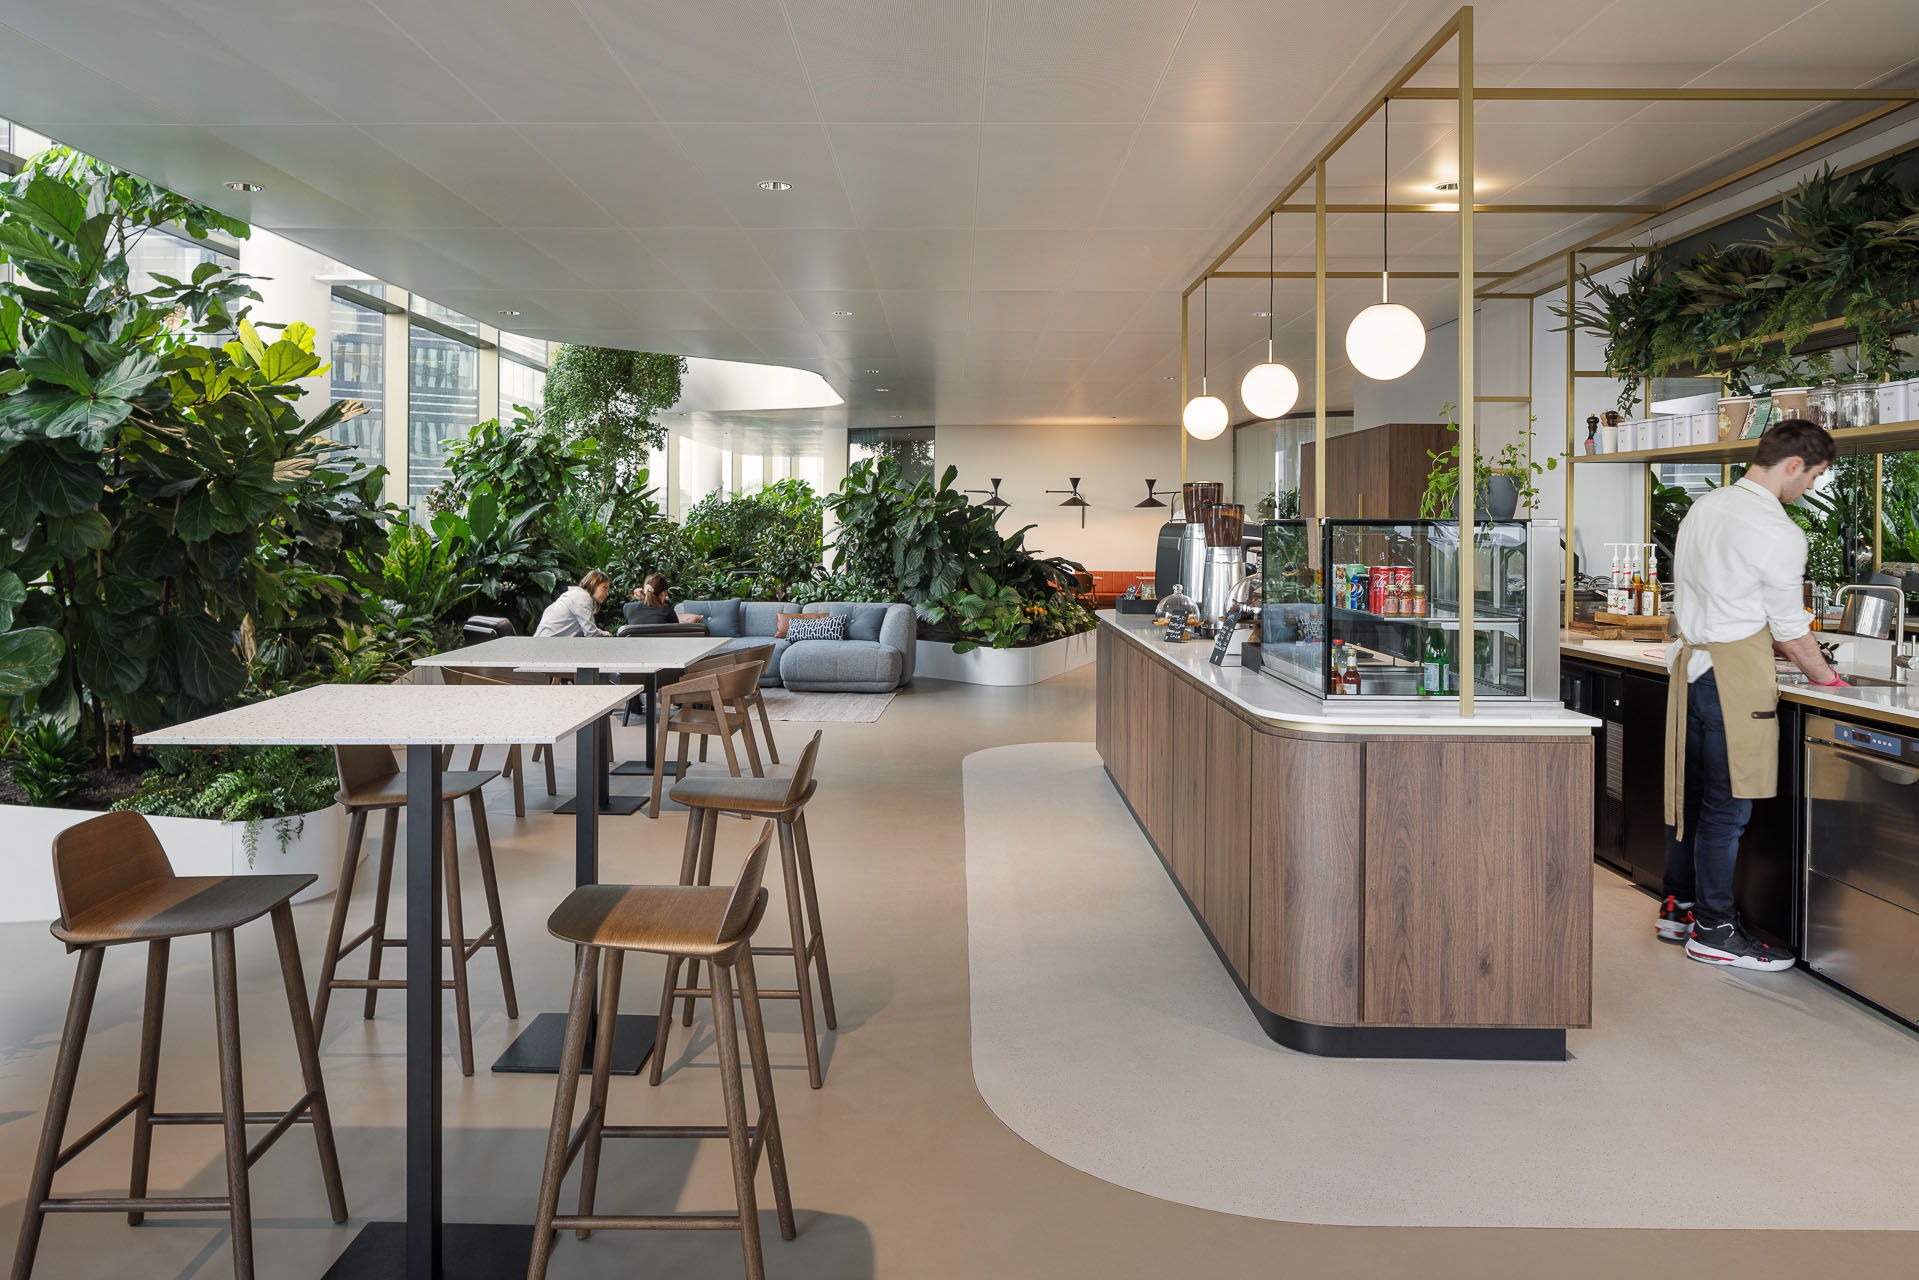 Wij hebben het high-end meubilair geselecteerd en mogen leveren voor het Grab & Go concept in Central Park Utrecht. 